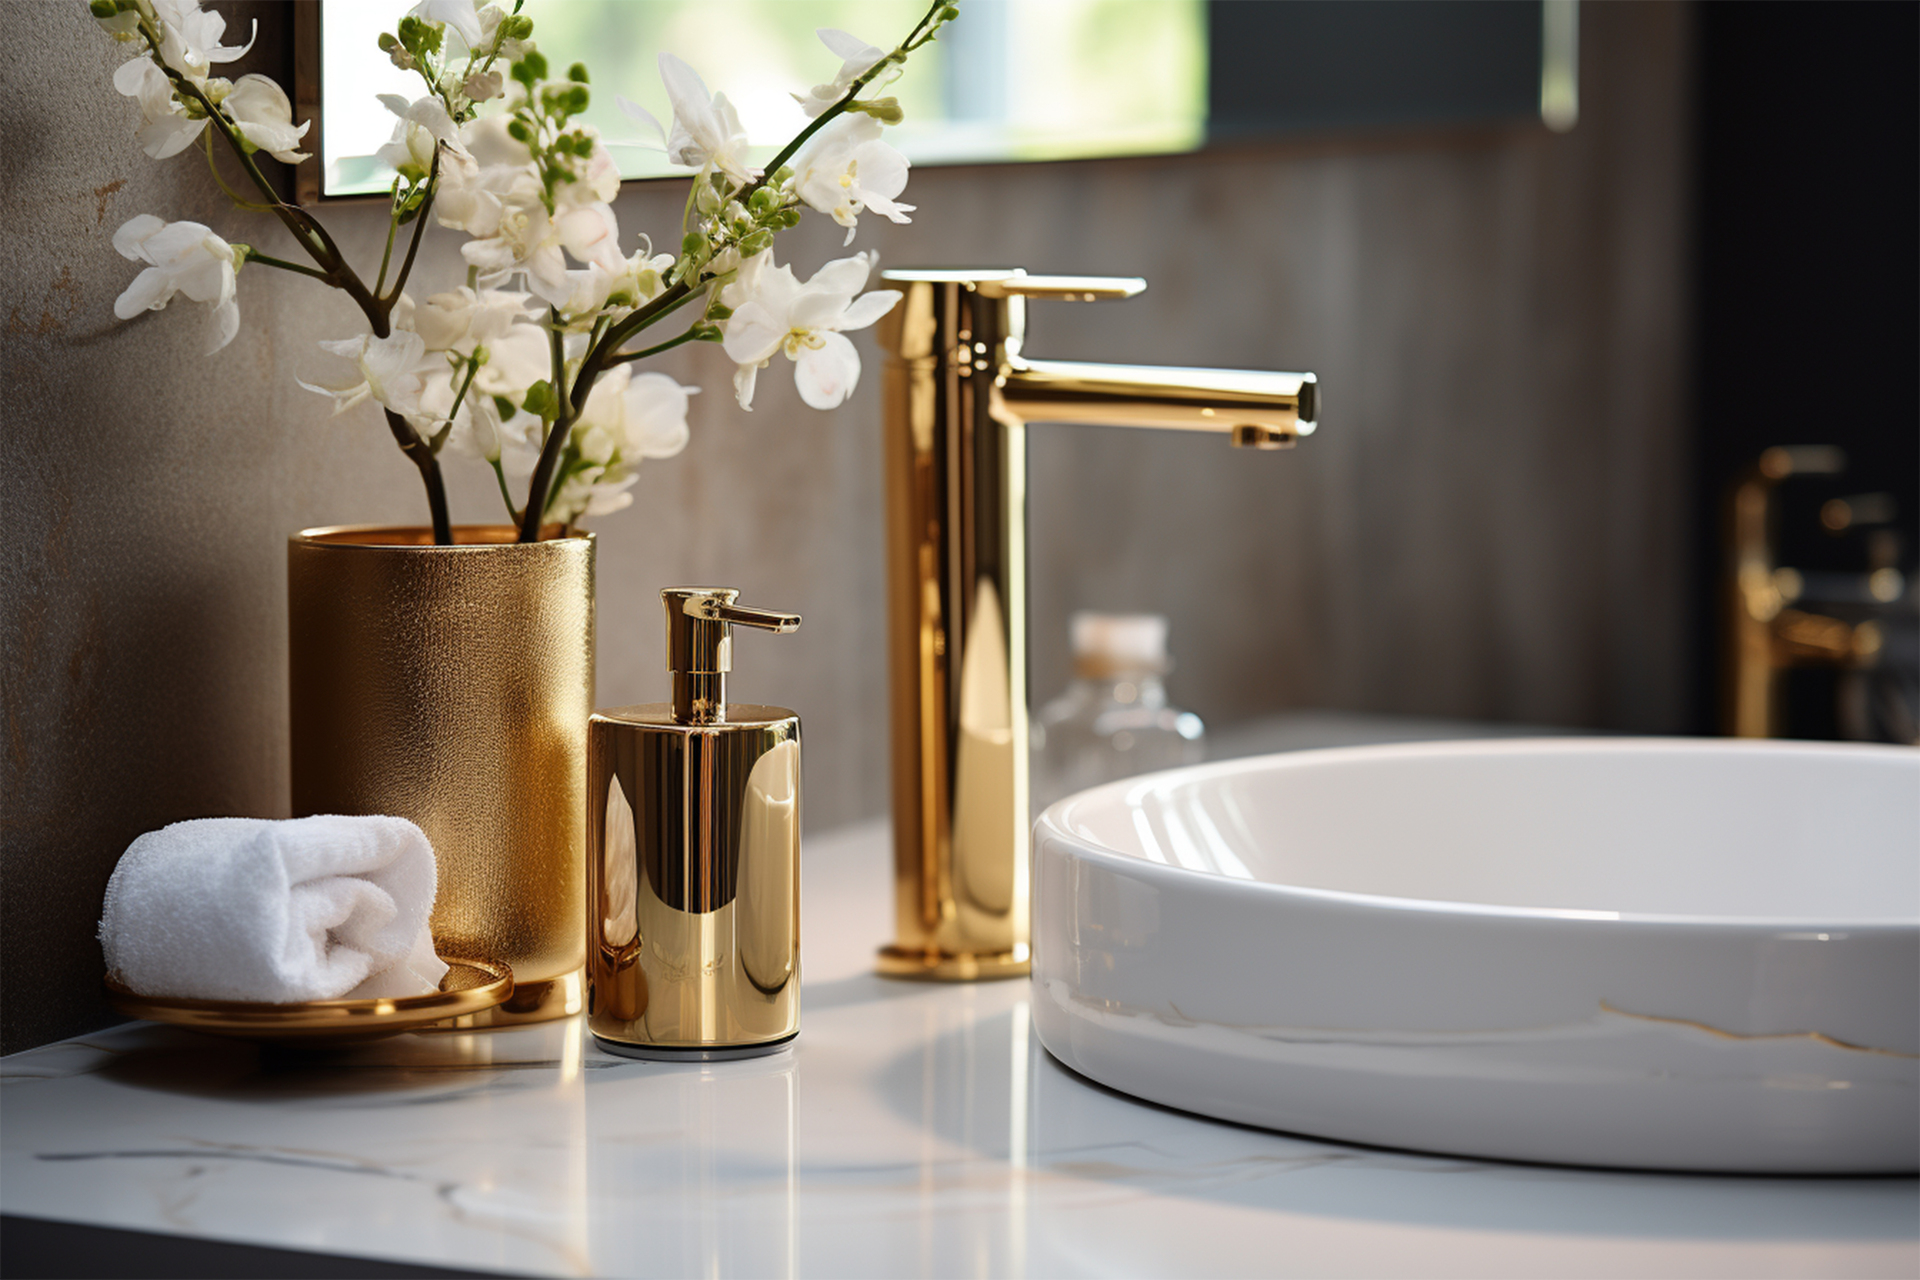 Ta urocza biała łazienka z pięknymi złotymi kranami to wyrafinowane połączenie klasyki i luksusu. Jasne płytki i eleganckie wykończenia tworzą atmosferę czystości i świeżości, podkreślając minimalistyczny design. Złote kraniki dodają tej przestrzeni wyjątkowego efektu i dodatkowej elegancji, tworząc wrażenie wytworności i luksusowego spa